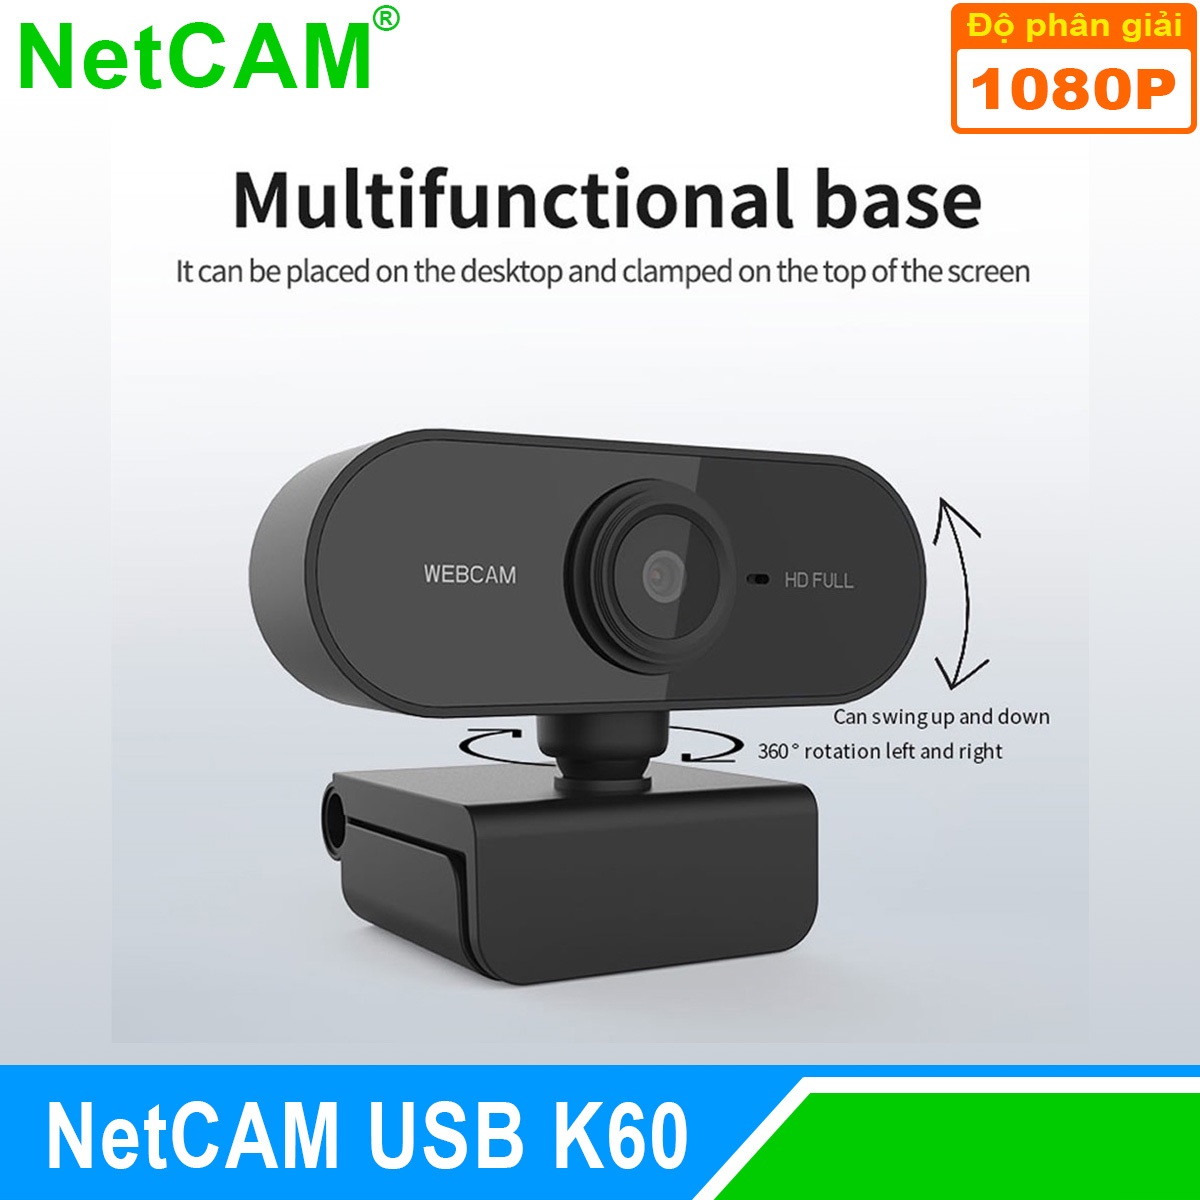 Webcam Netcam USB K60 1080P - Hàng Chính Hãng